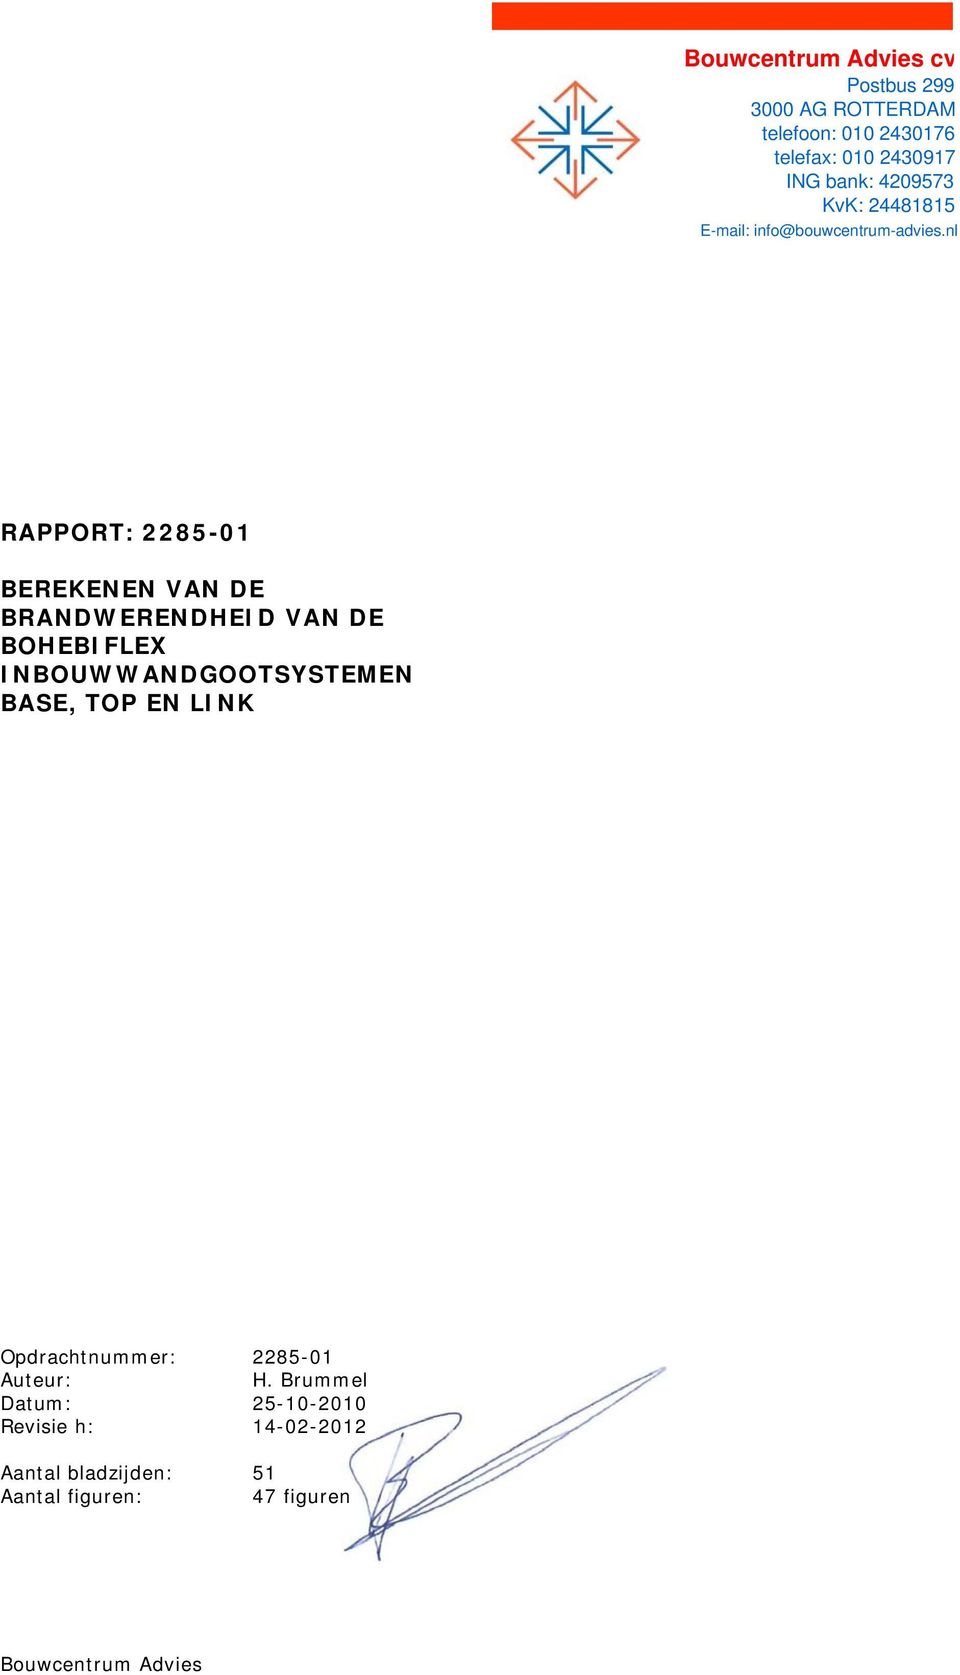 nl RAPPORT: 2285-01 BEREKENEN VAN DE BRANDWERENDHEID VAN DE BOHEBIFLEX INBOUWWANDGOOTSYSTEMEN BASE,